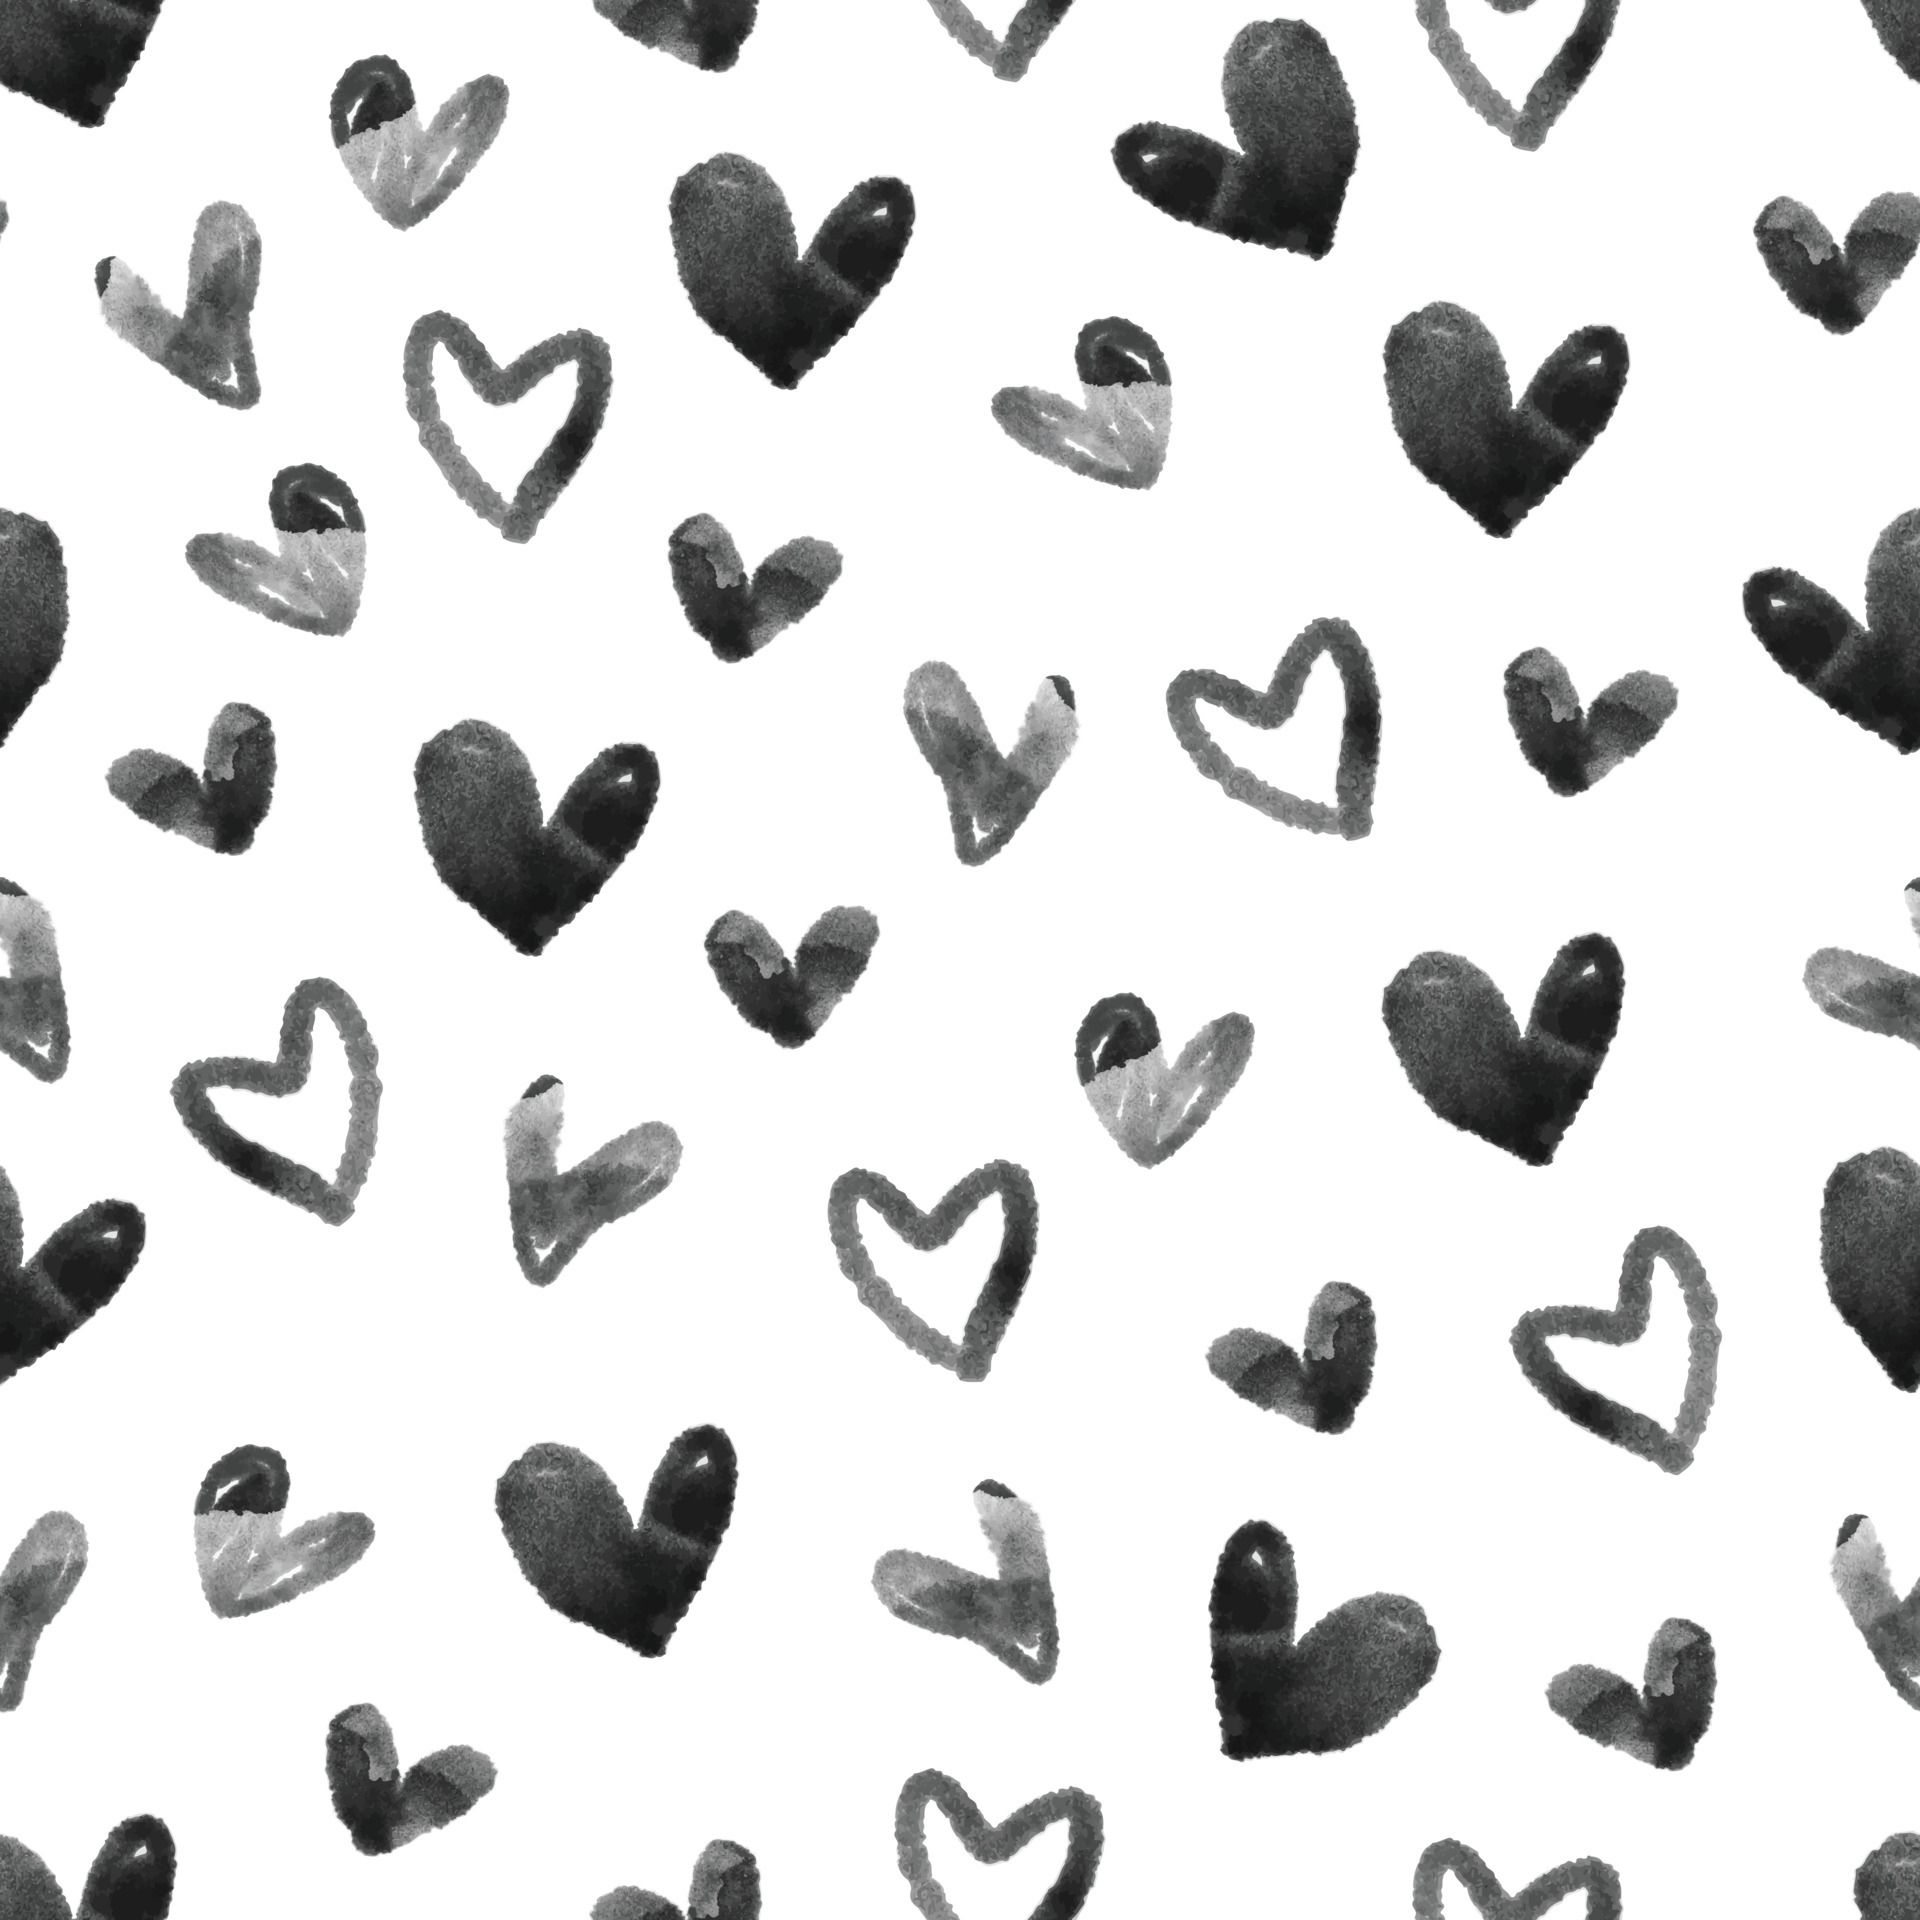 Simple Black Heart Shape Pattern - Mẫu in hình trái tim đen đơn giản nhưng không kém phần ấn tượng. Đây là một lựa chọn hoàn hảo để trang trí cho quần áo, mũ hay túi xách. Cùng theo dõi để tìm kiếm ý tưởng trang trí độc đáo!